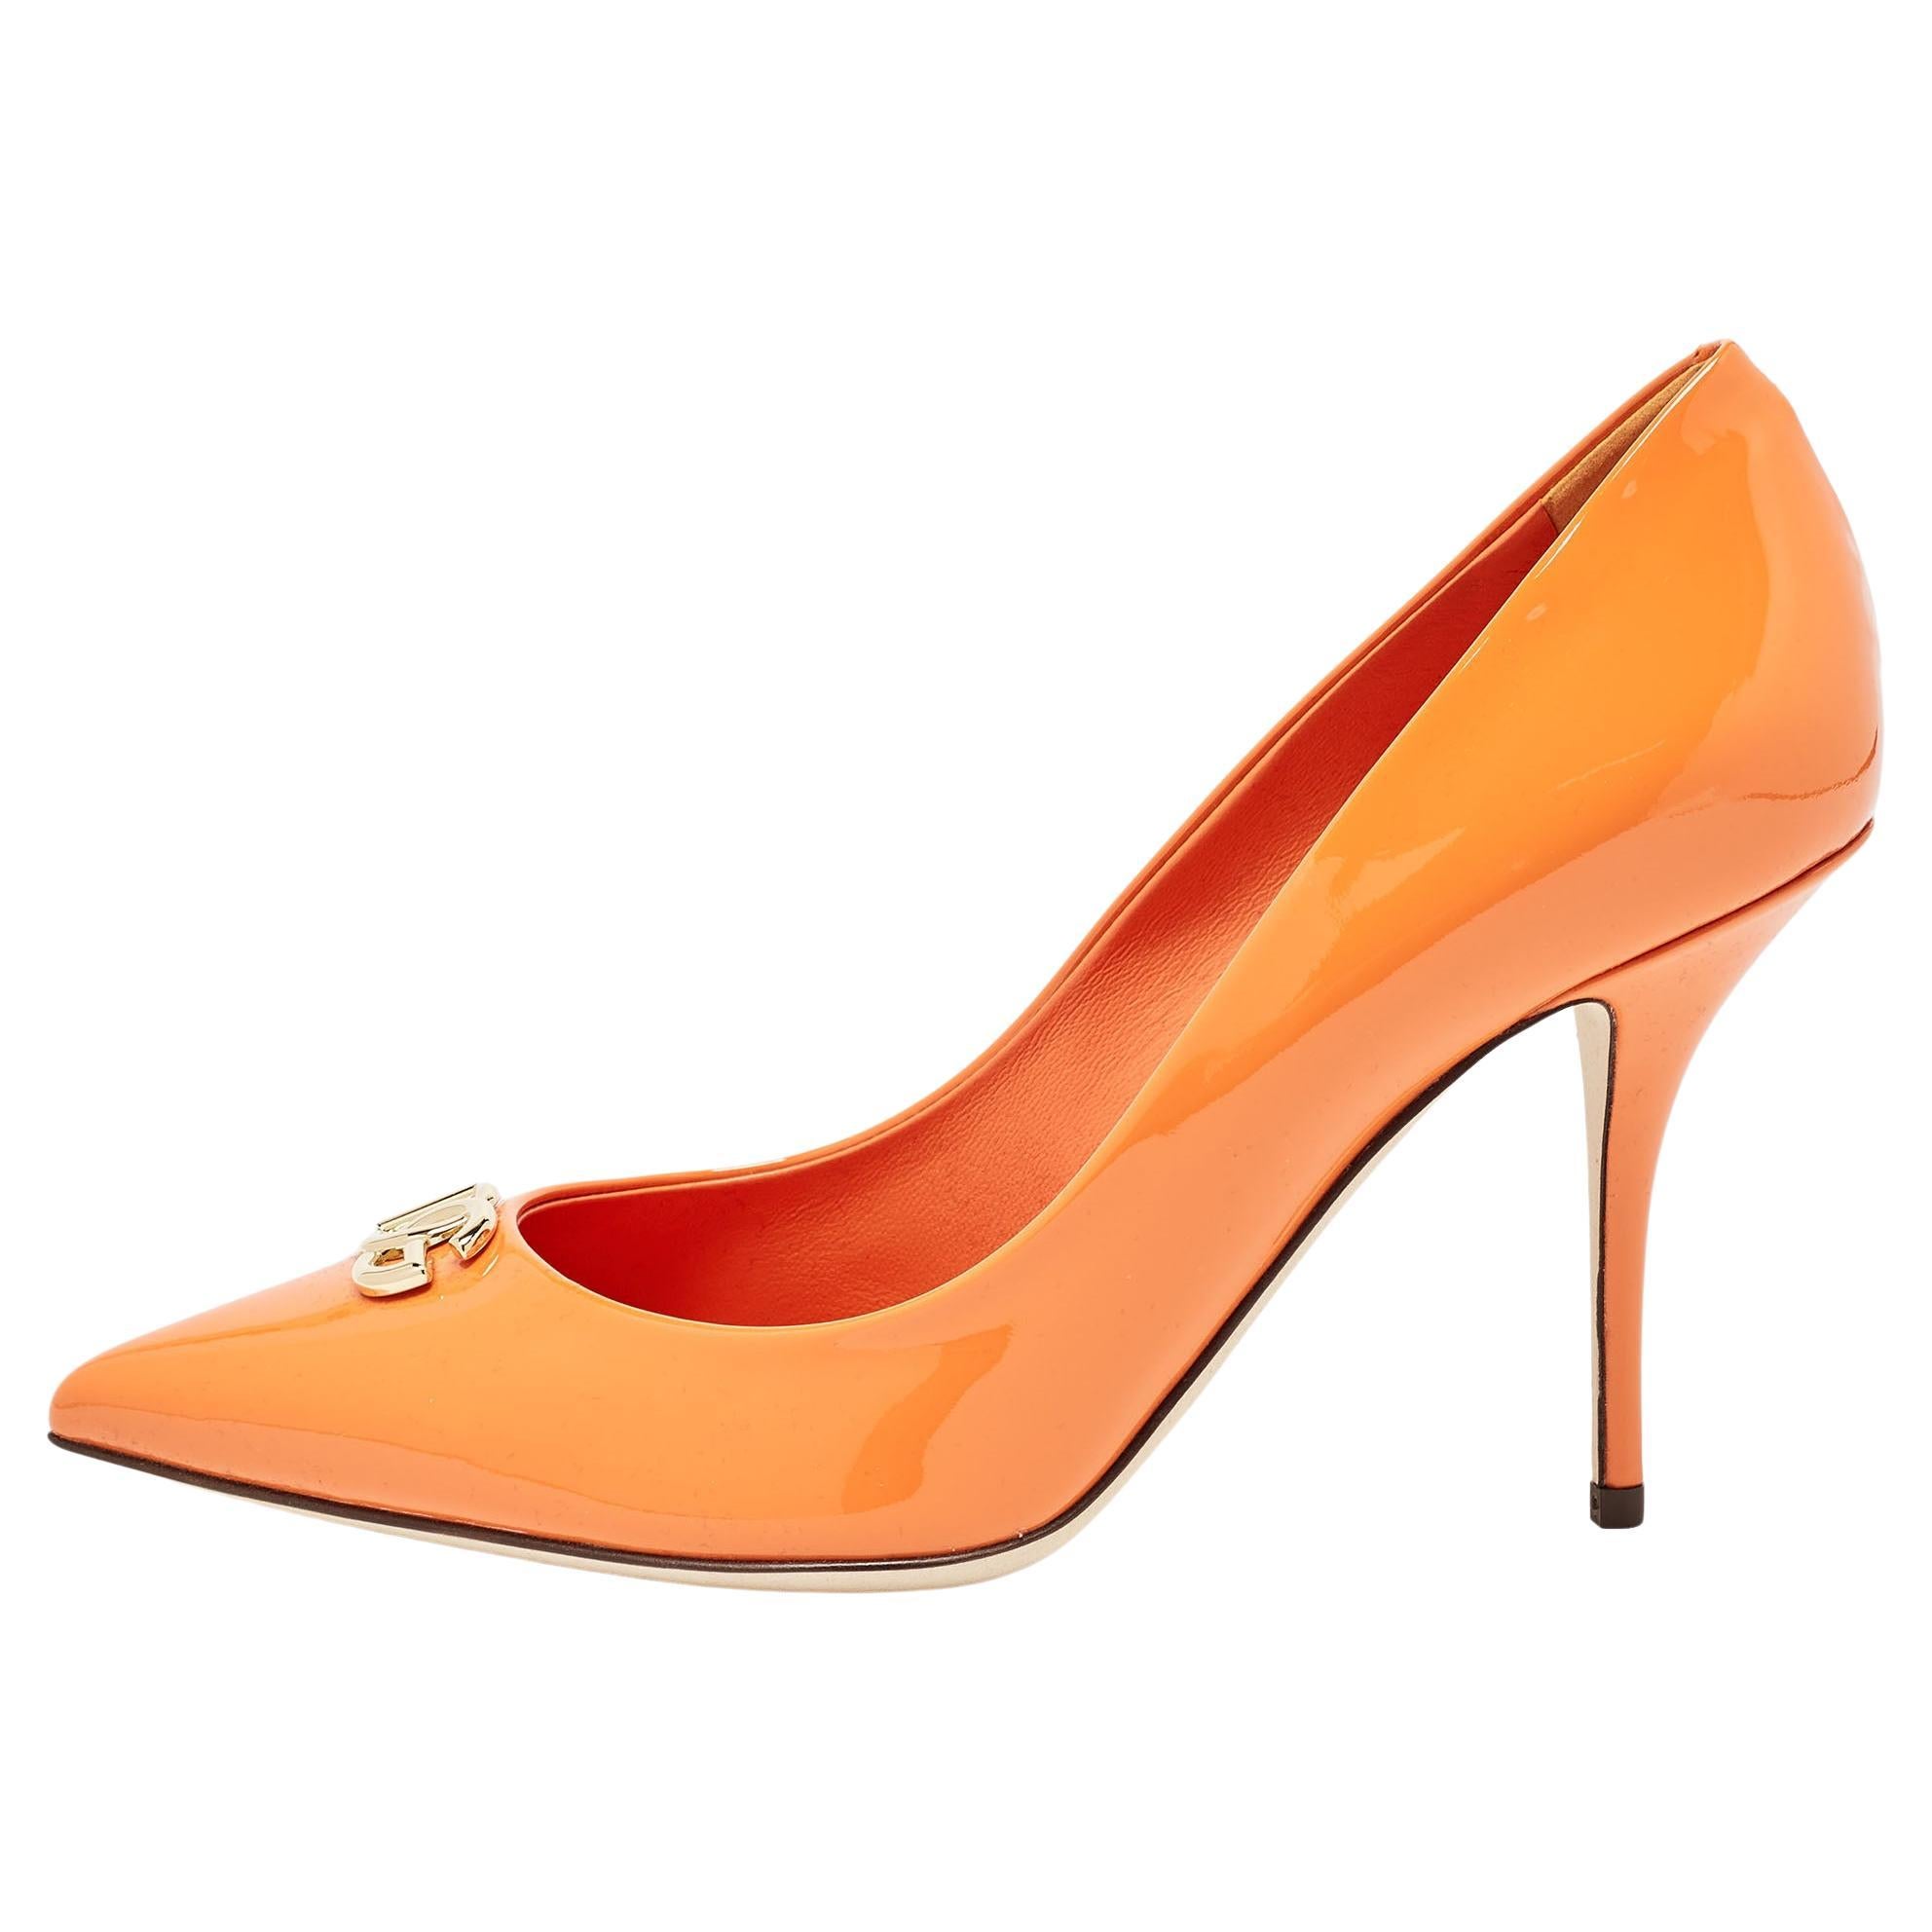 Dolce & Gabbana Orange Patent Leather DG Buckle Pumps Size 37.5